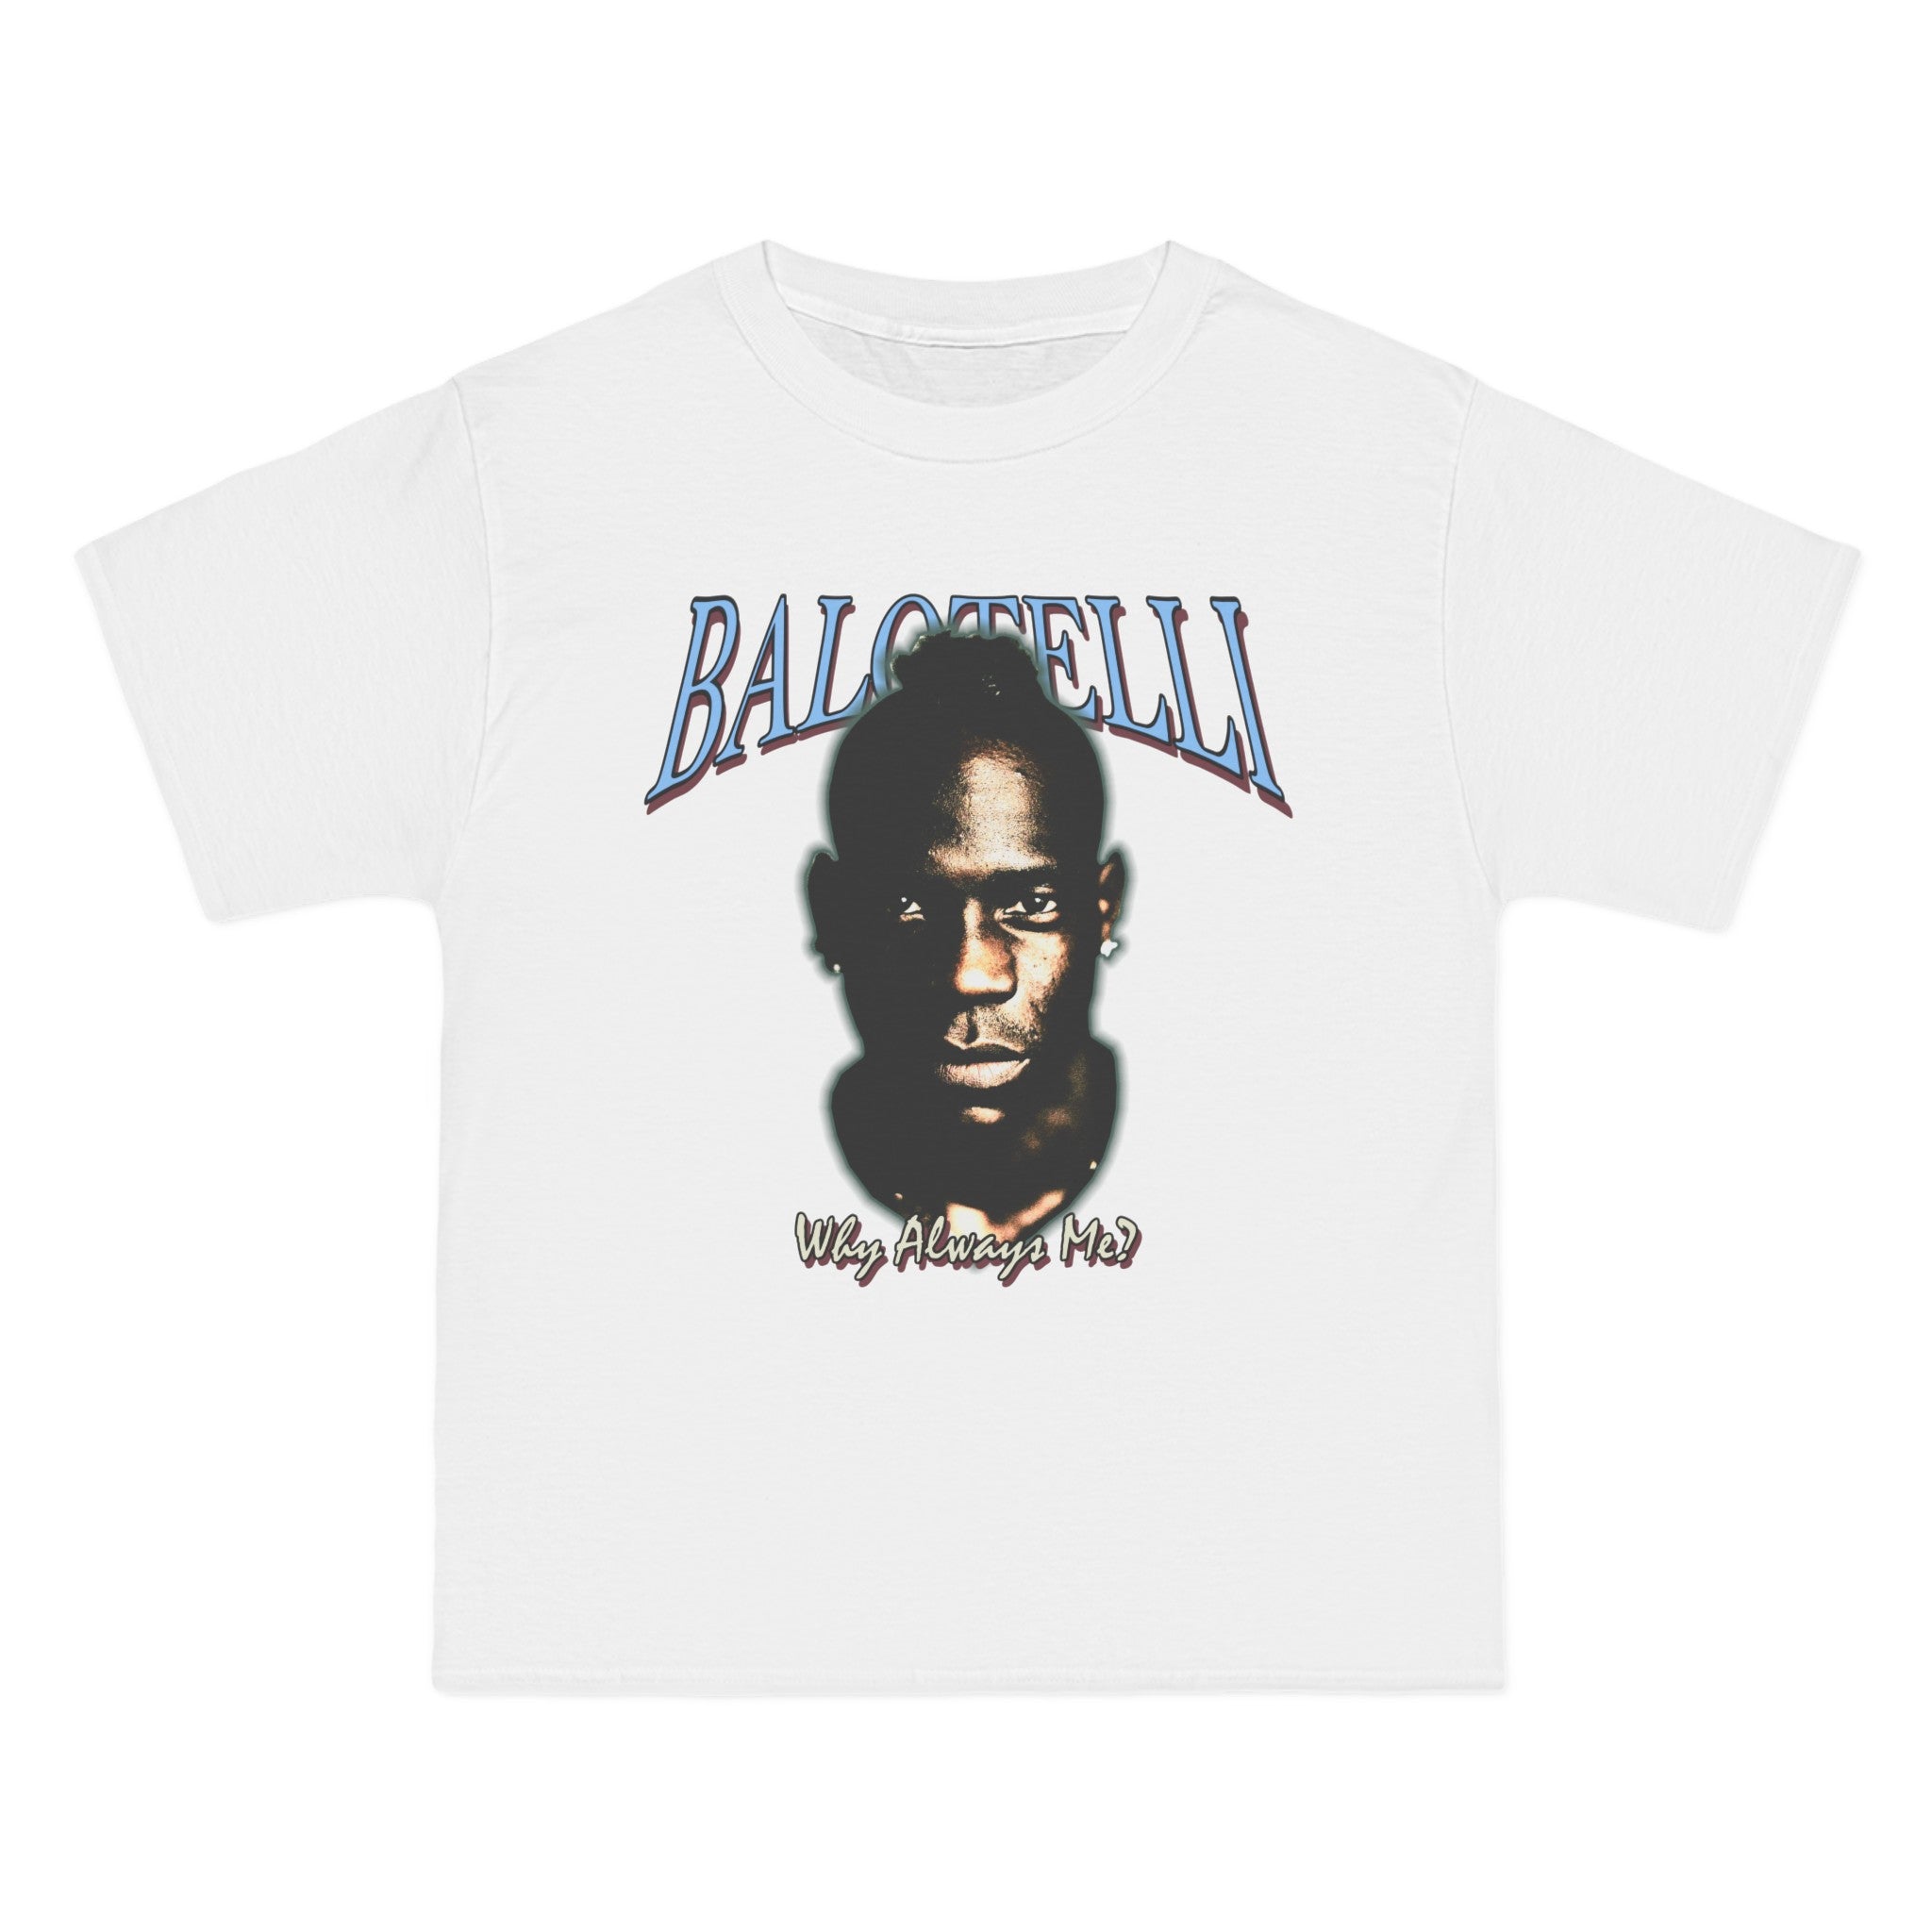 Mario Balotelli Why Always Me T-Shirt